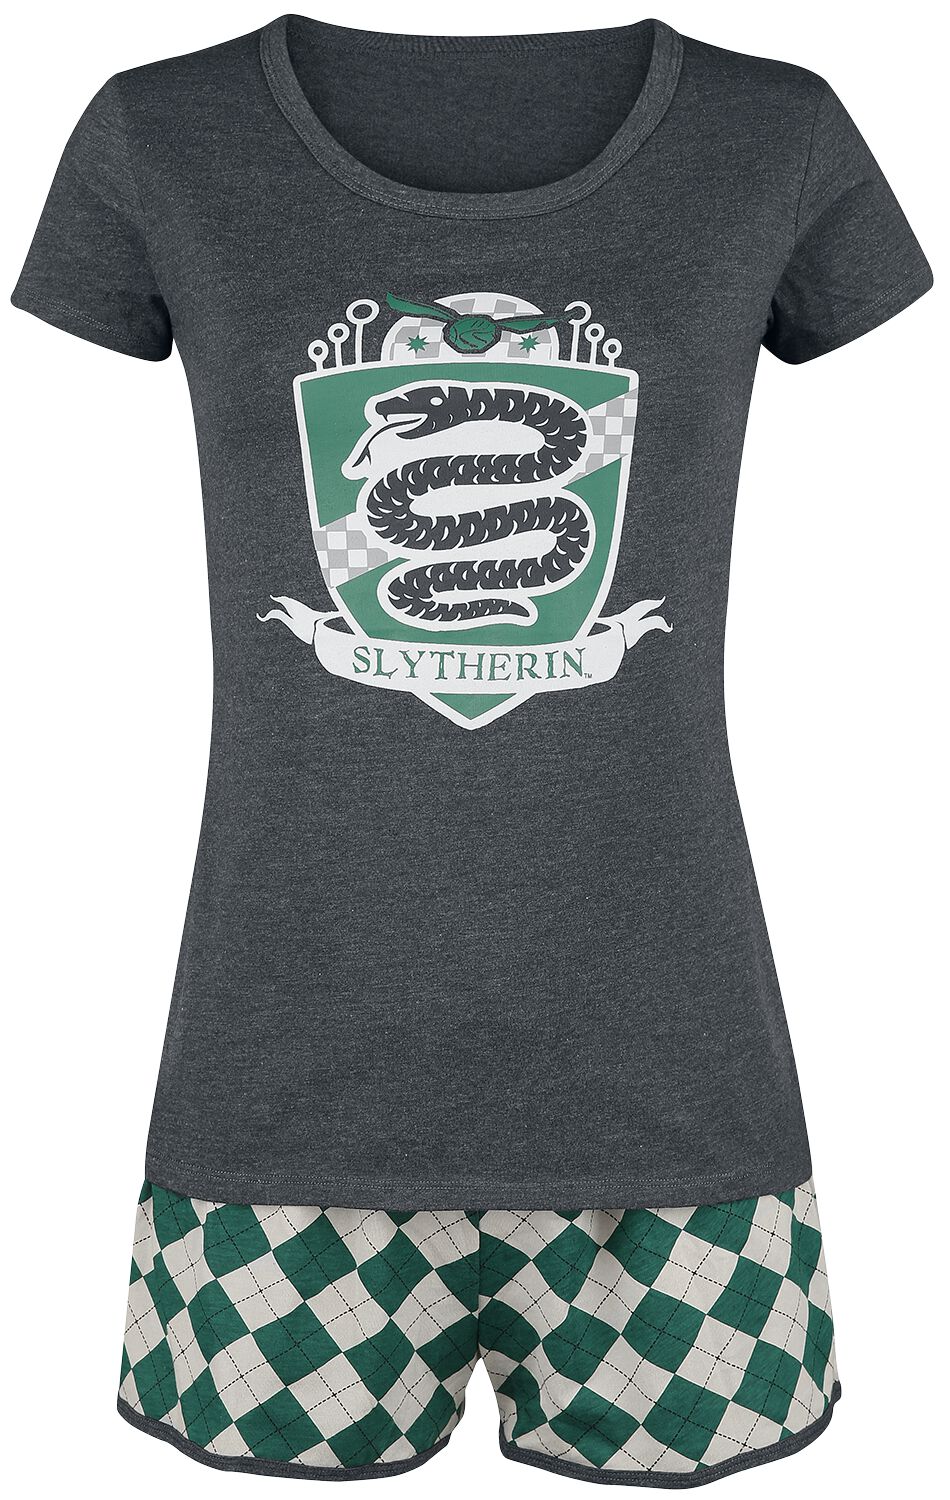 Harry Potter Schlafanzug - Slytherin Quidditch - XS bis 3XL - für Damen - Größe XS - grün/grau  - EMP exklusives Merchandise!